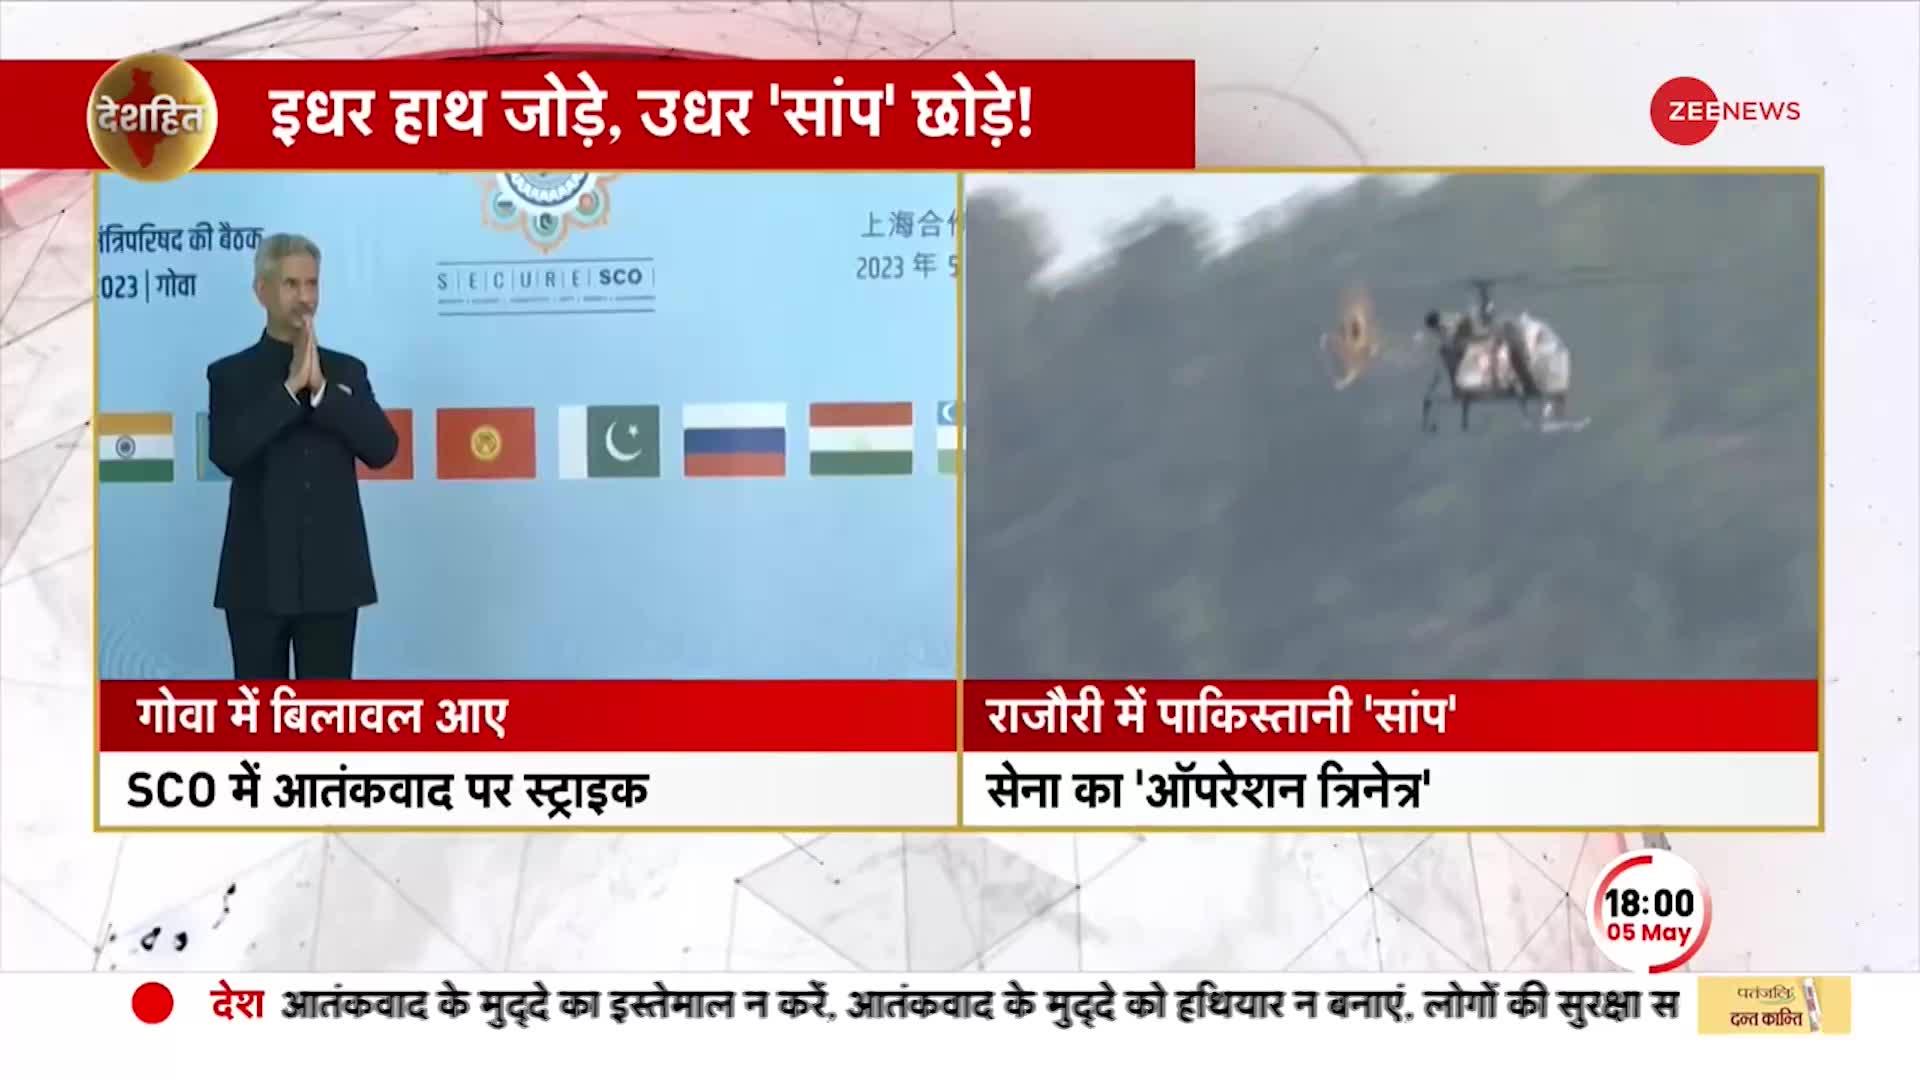 Deshhit: बिलावल के भारत आते ही कश्मीर में हमला, आतंकवाद पर पाकिस्तान EXPOSED!